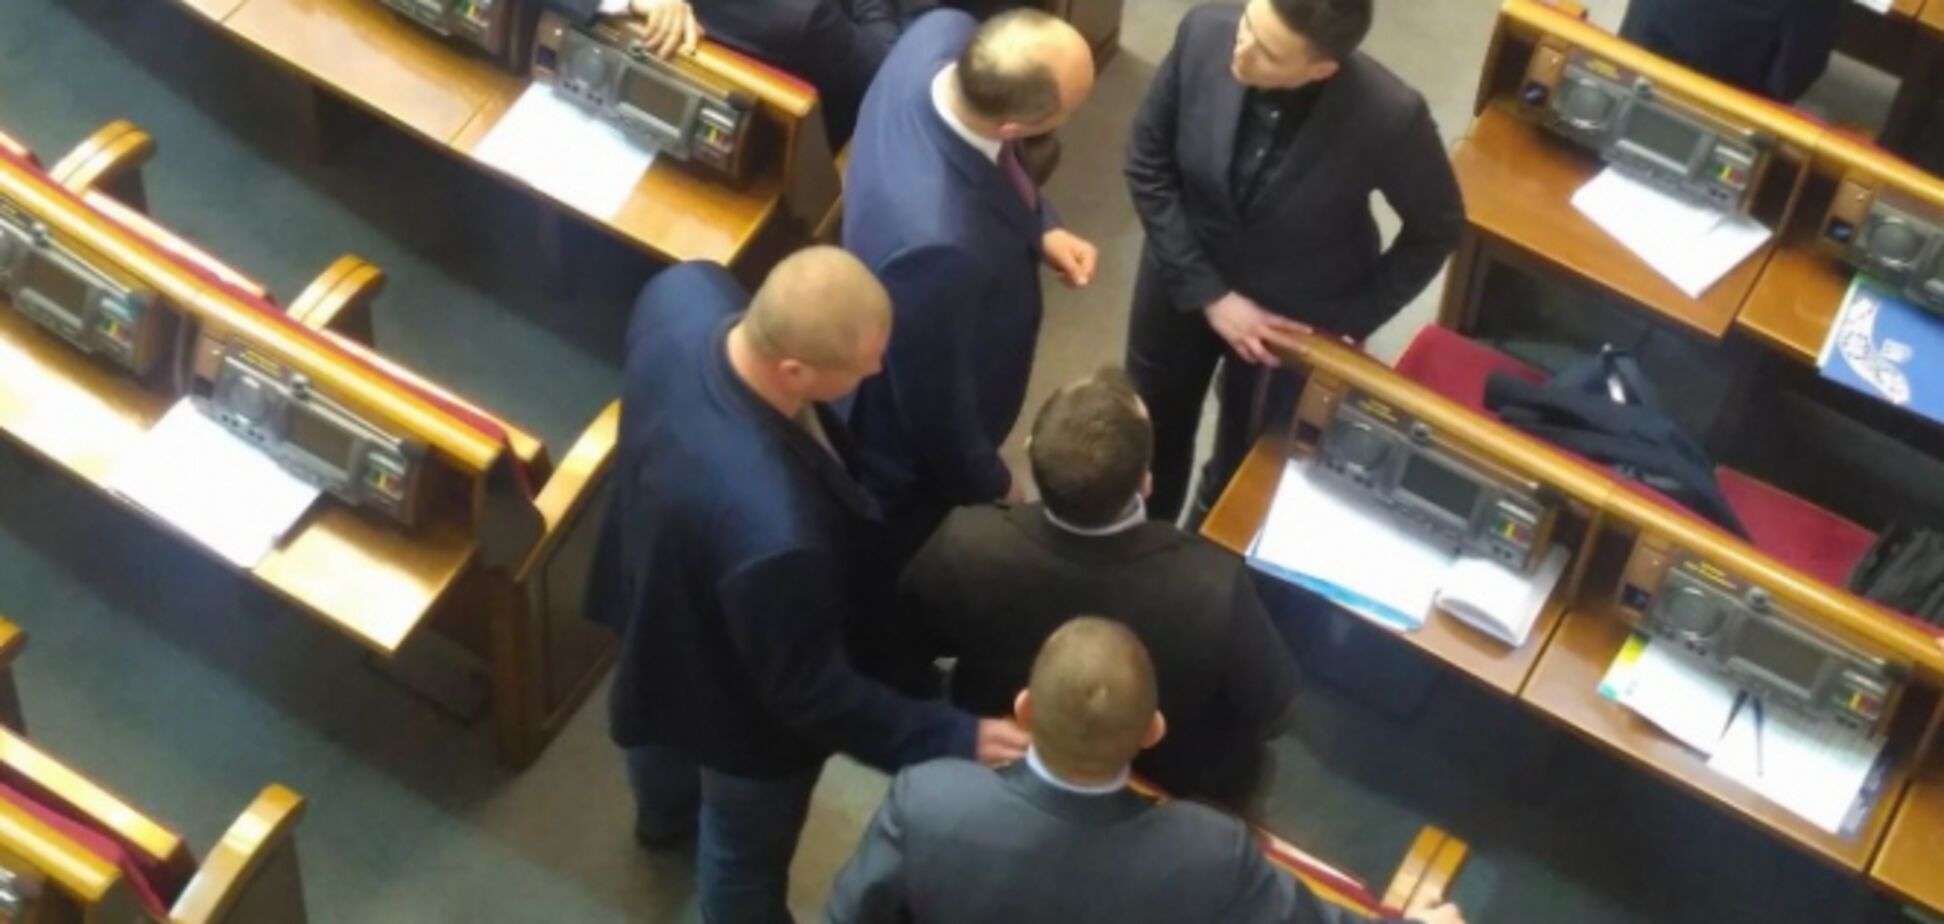 Савченко пронесла в Раду оружие: юрист сказал, что ей грозит